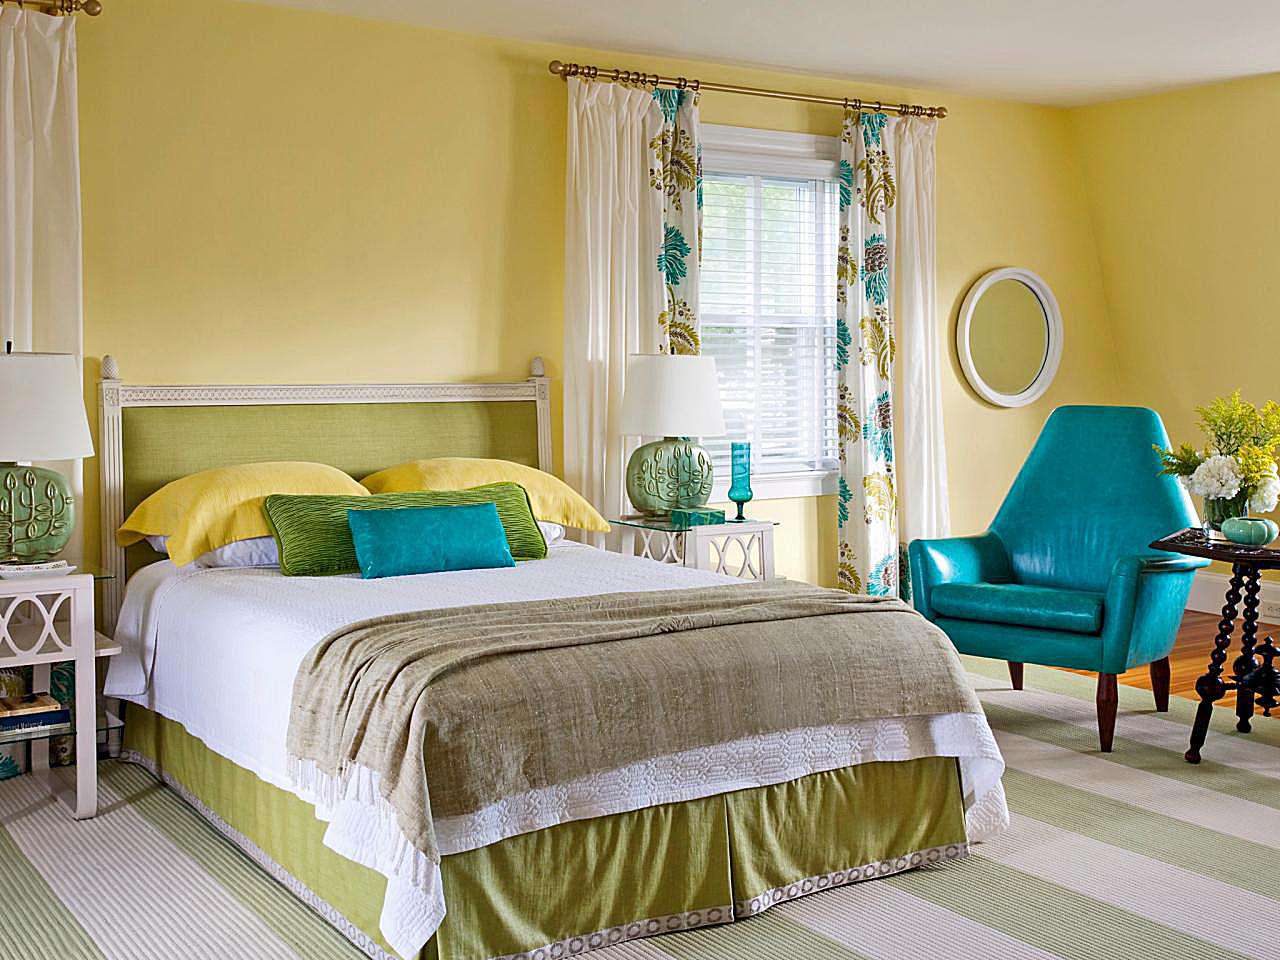 Sơn tường phòng ngủ màu vàng nhạt phối hợp với các tông màu nhẹ nhàng khác từ nội thất tạo nên tổng thể phòng ngủ hài hoà